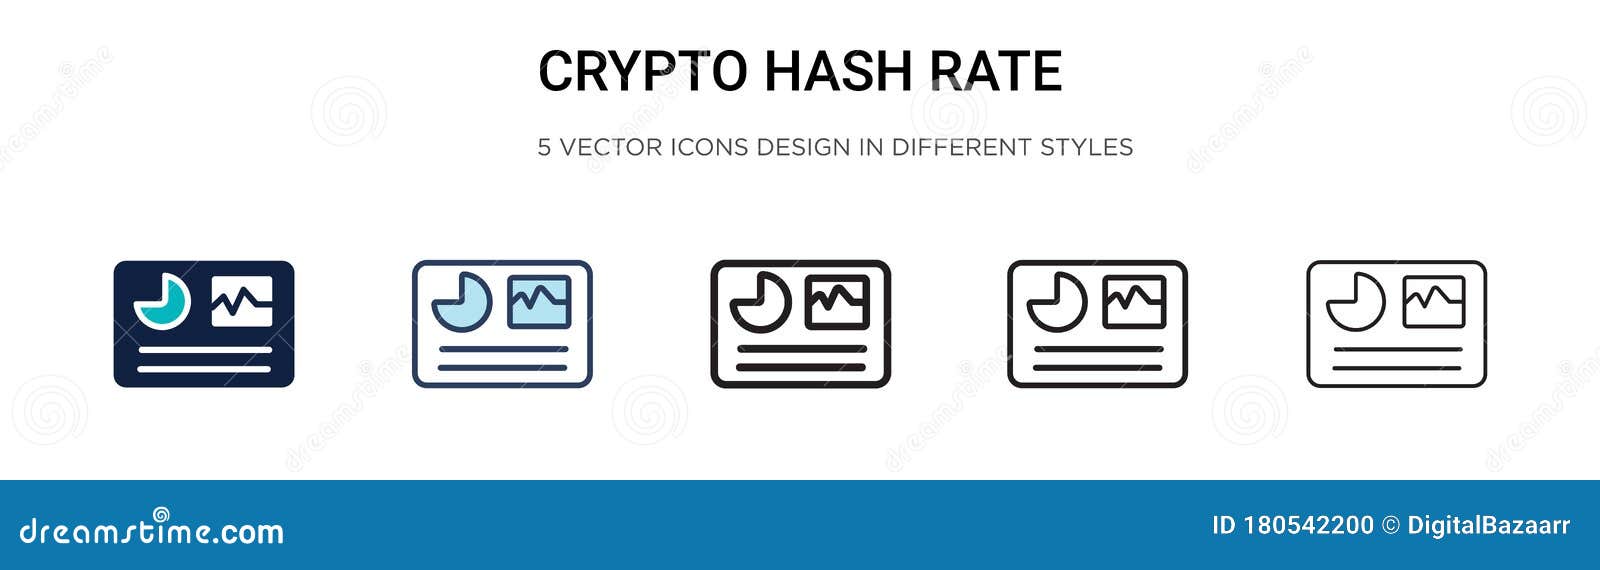 crypto.com hash id